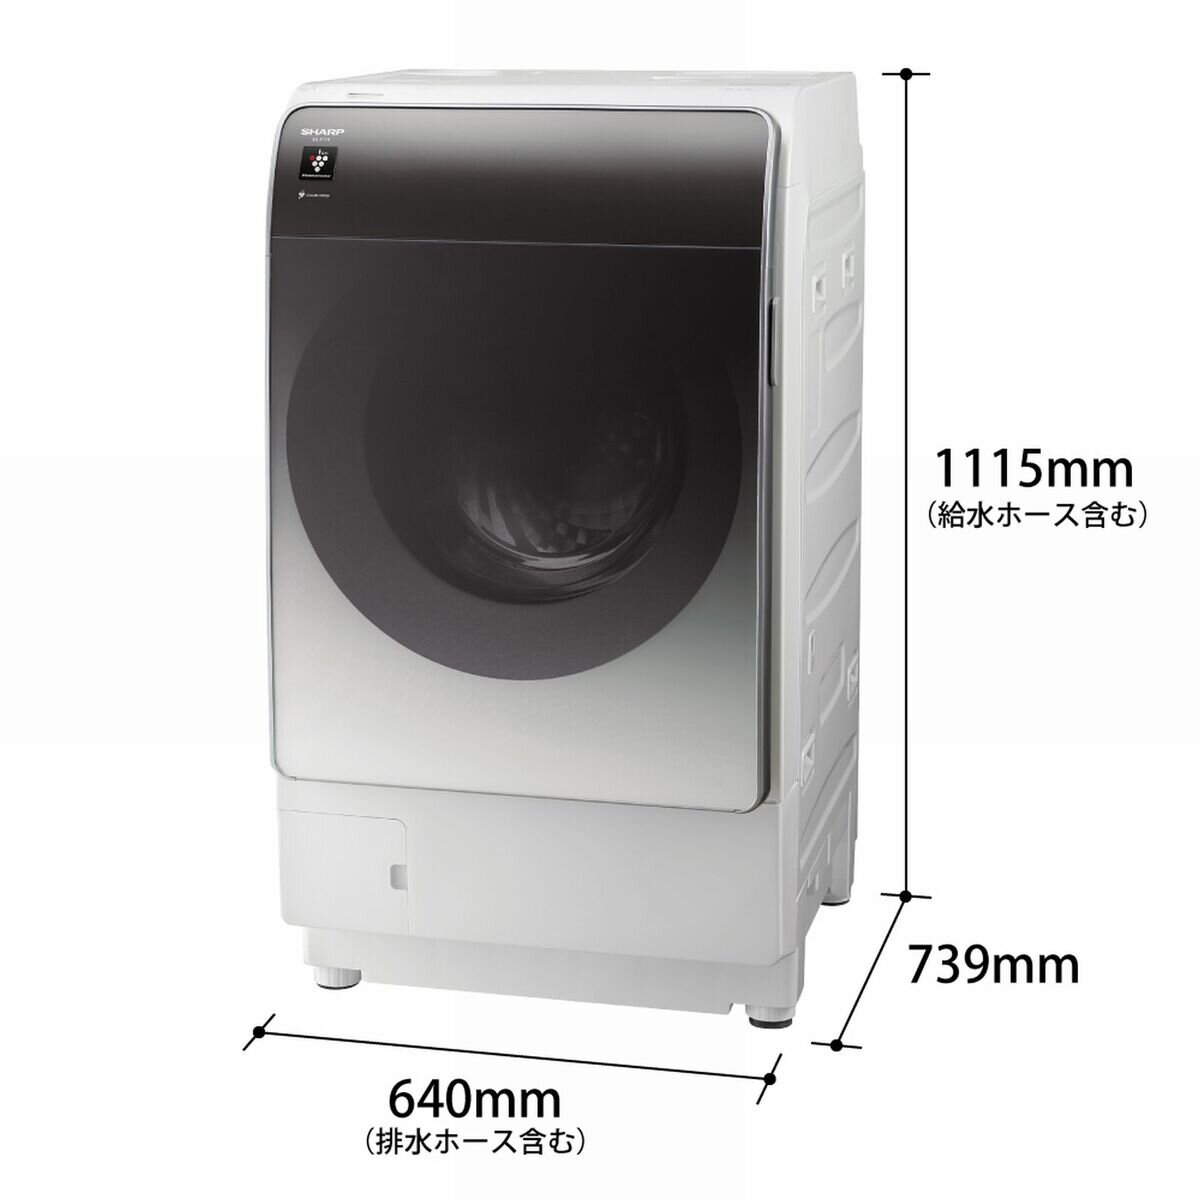 シャープ洗濯機6kg節水 抗菌加工 時短コース 風乾燥機能付き 2020年製-